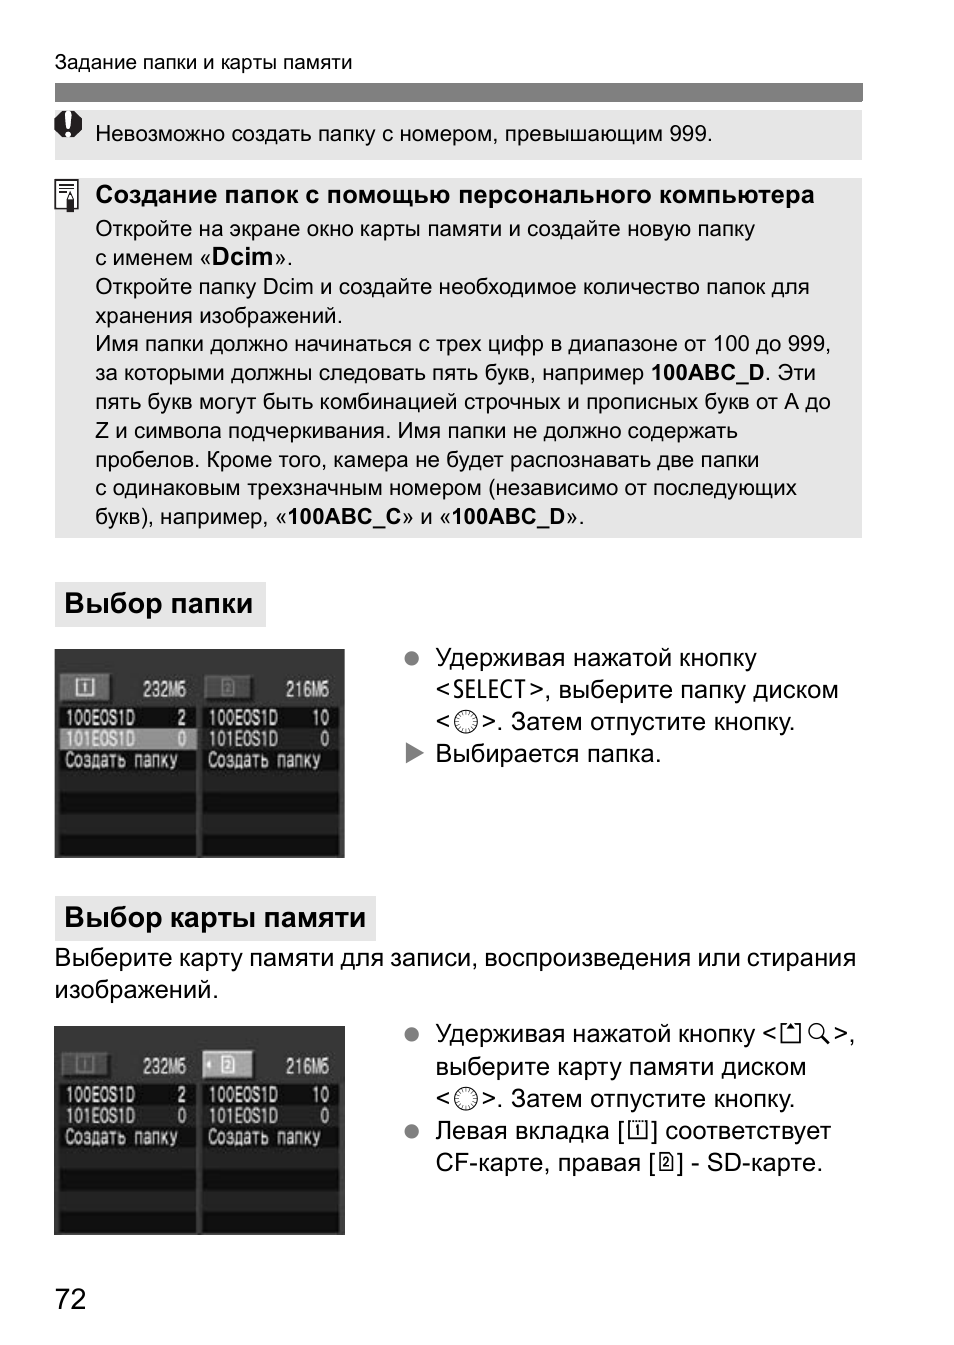 Выбор папки, Выбор карты памяти | Инструкция по эксплуатации Canon EOS 1D Mark II N | Страница 72 / 196